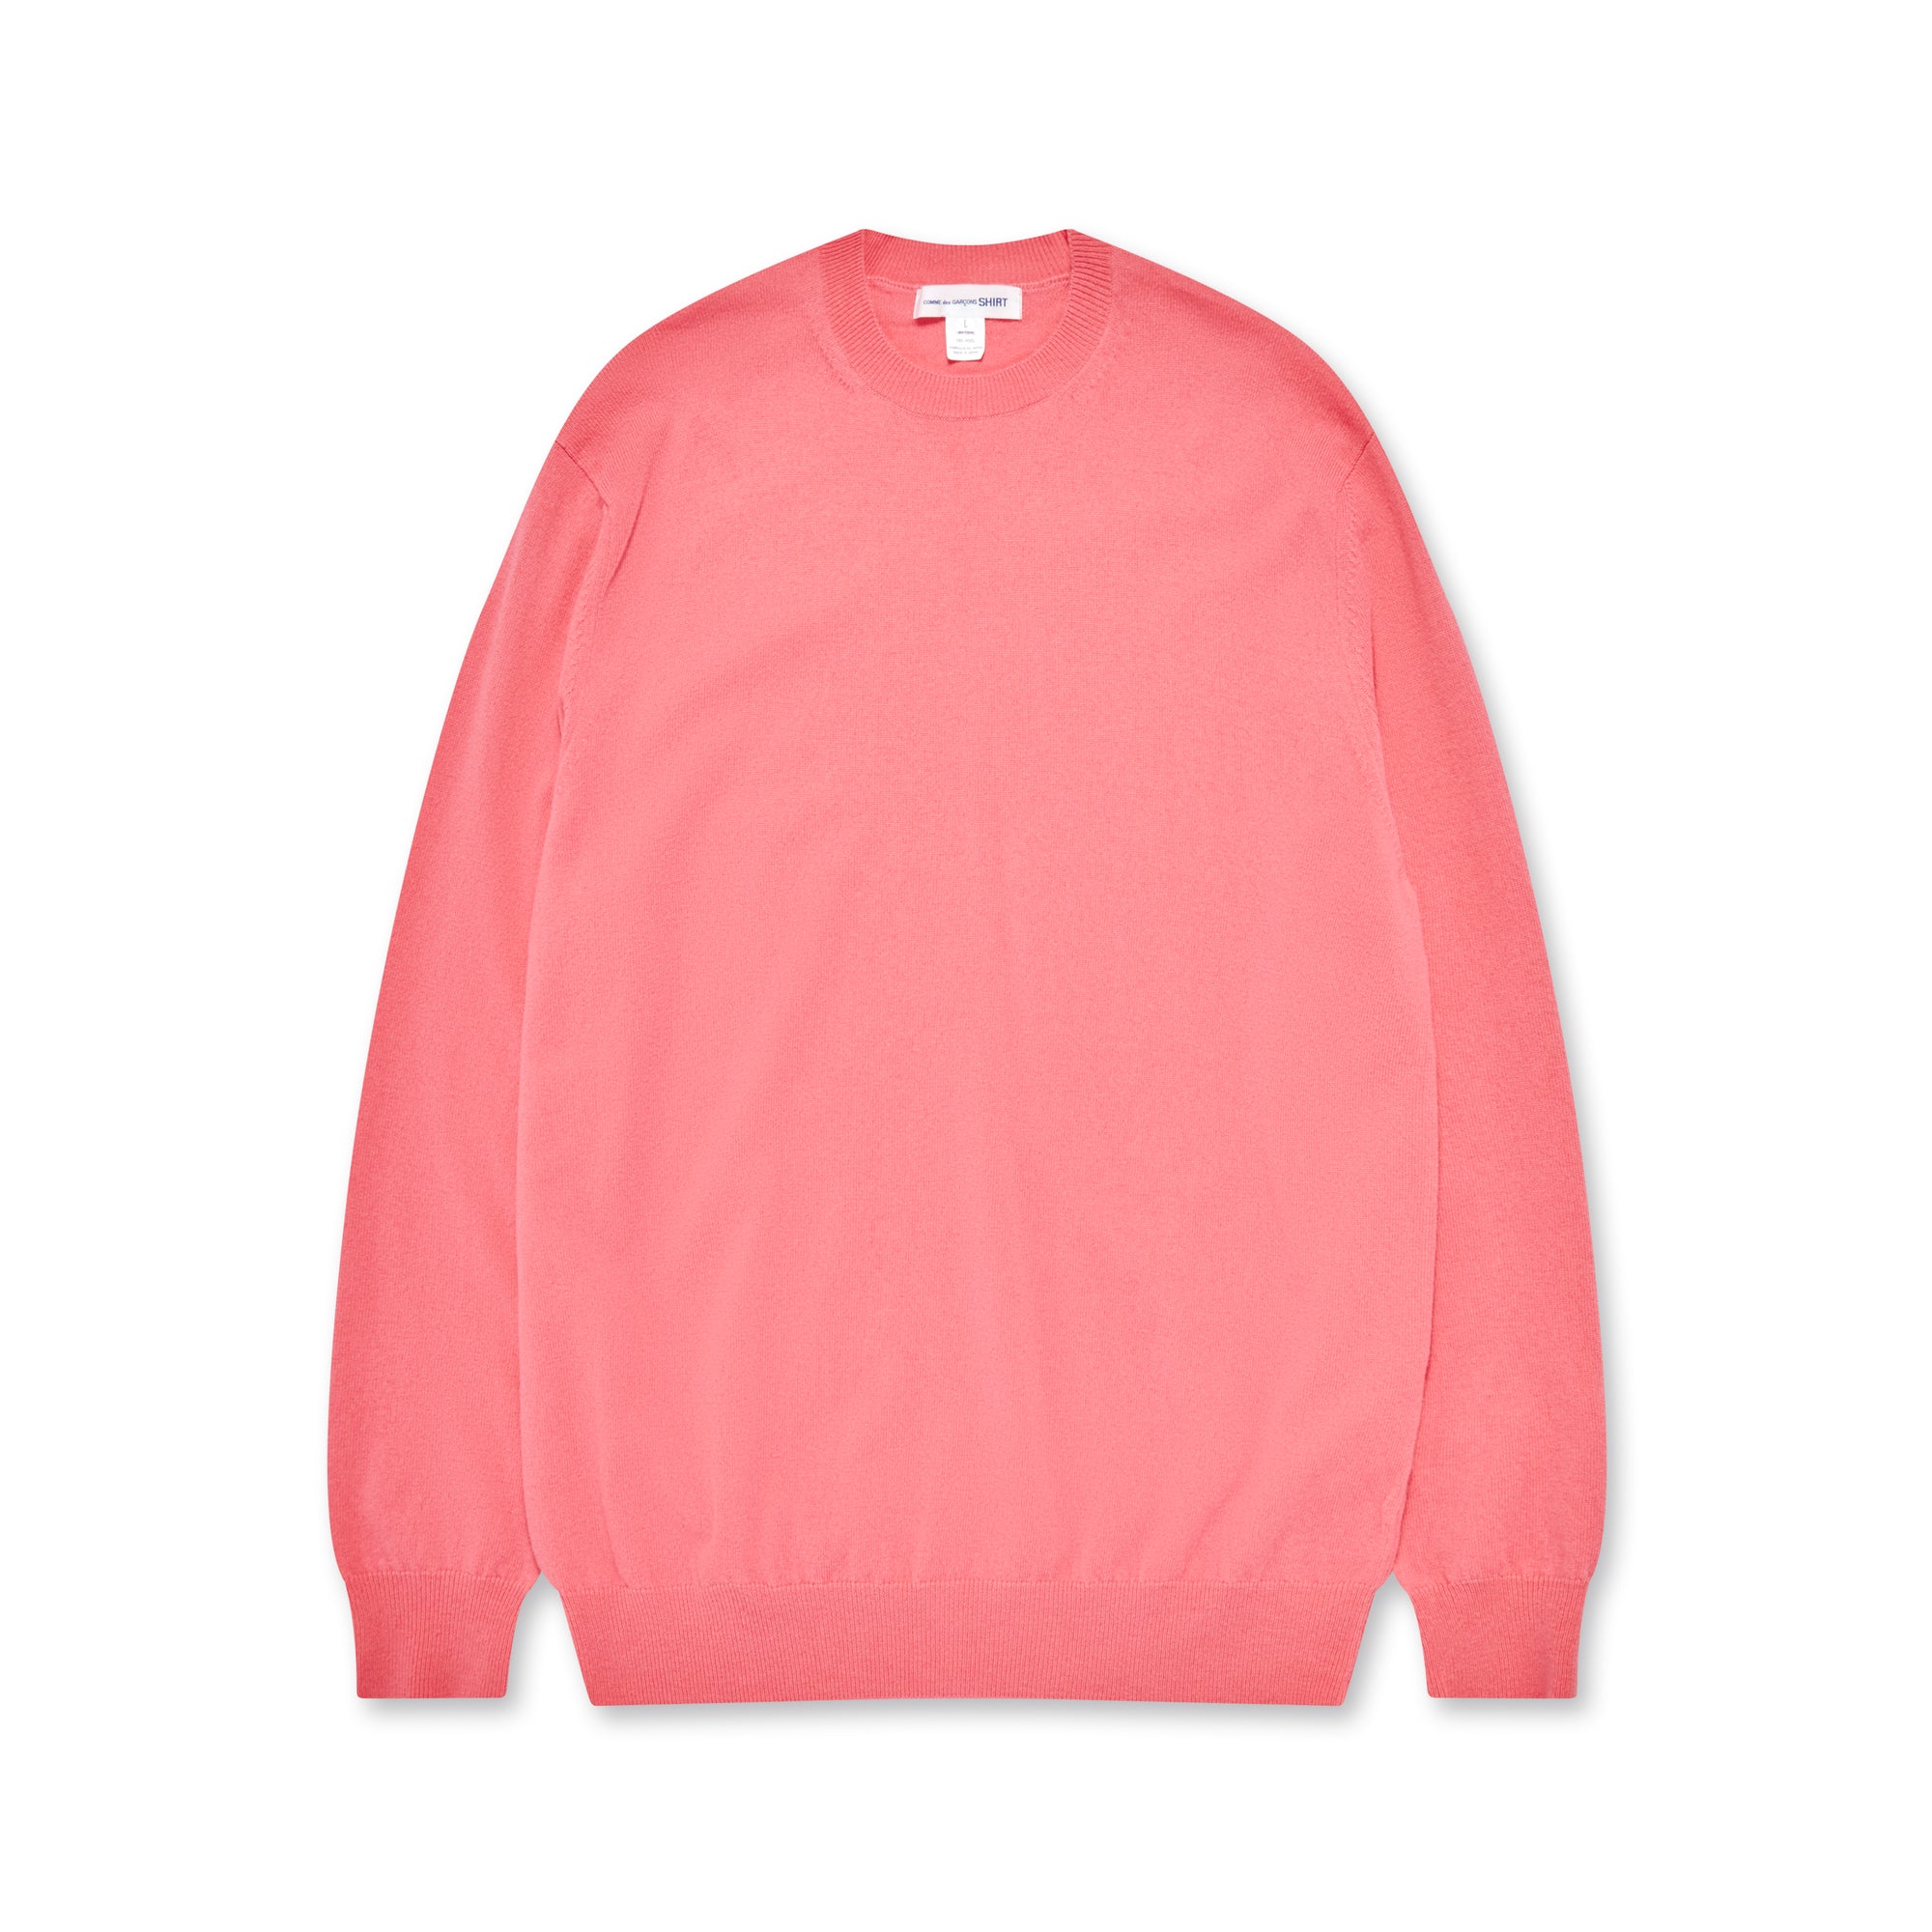 CDG Shirt - Men's Wool Sweater - (Pink) view 5